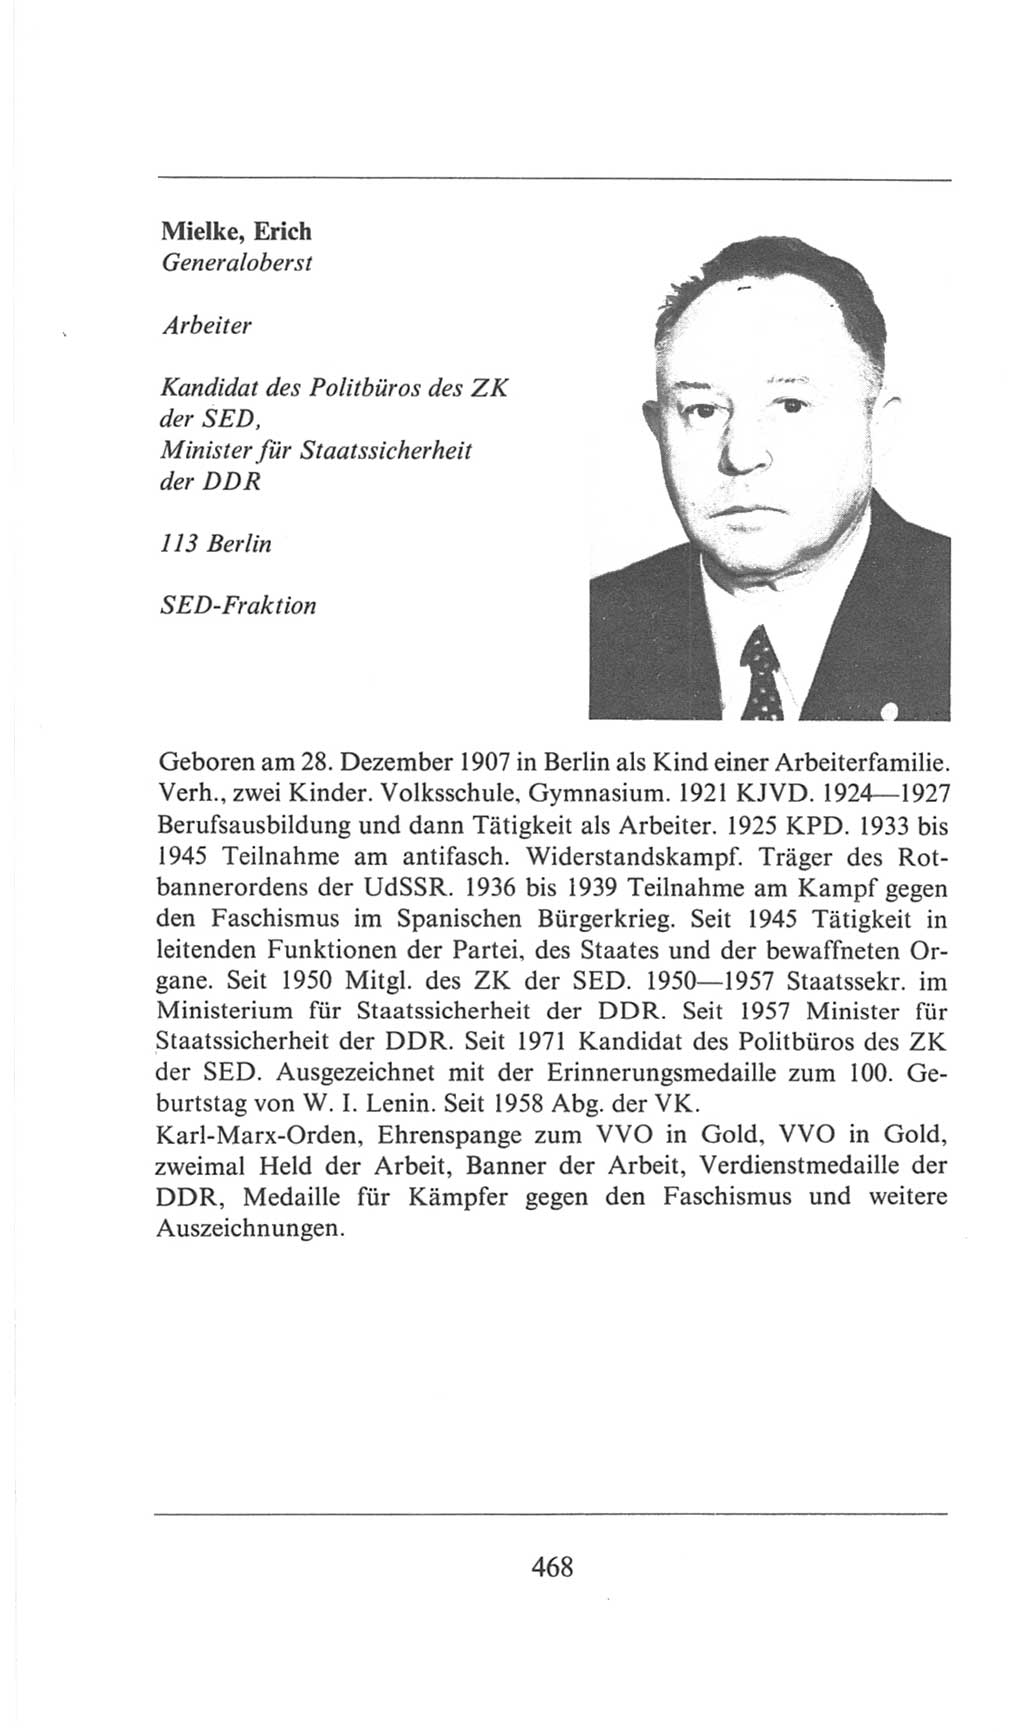 Volkskammer (VK) der Deutschen Demokratischen Republik (DDR), 6. Wahlperiode 1971-1976, Seite 468 (VK. DDR 6. WP. 1971-1976, S. 468)